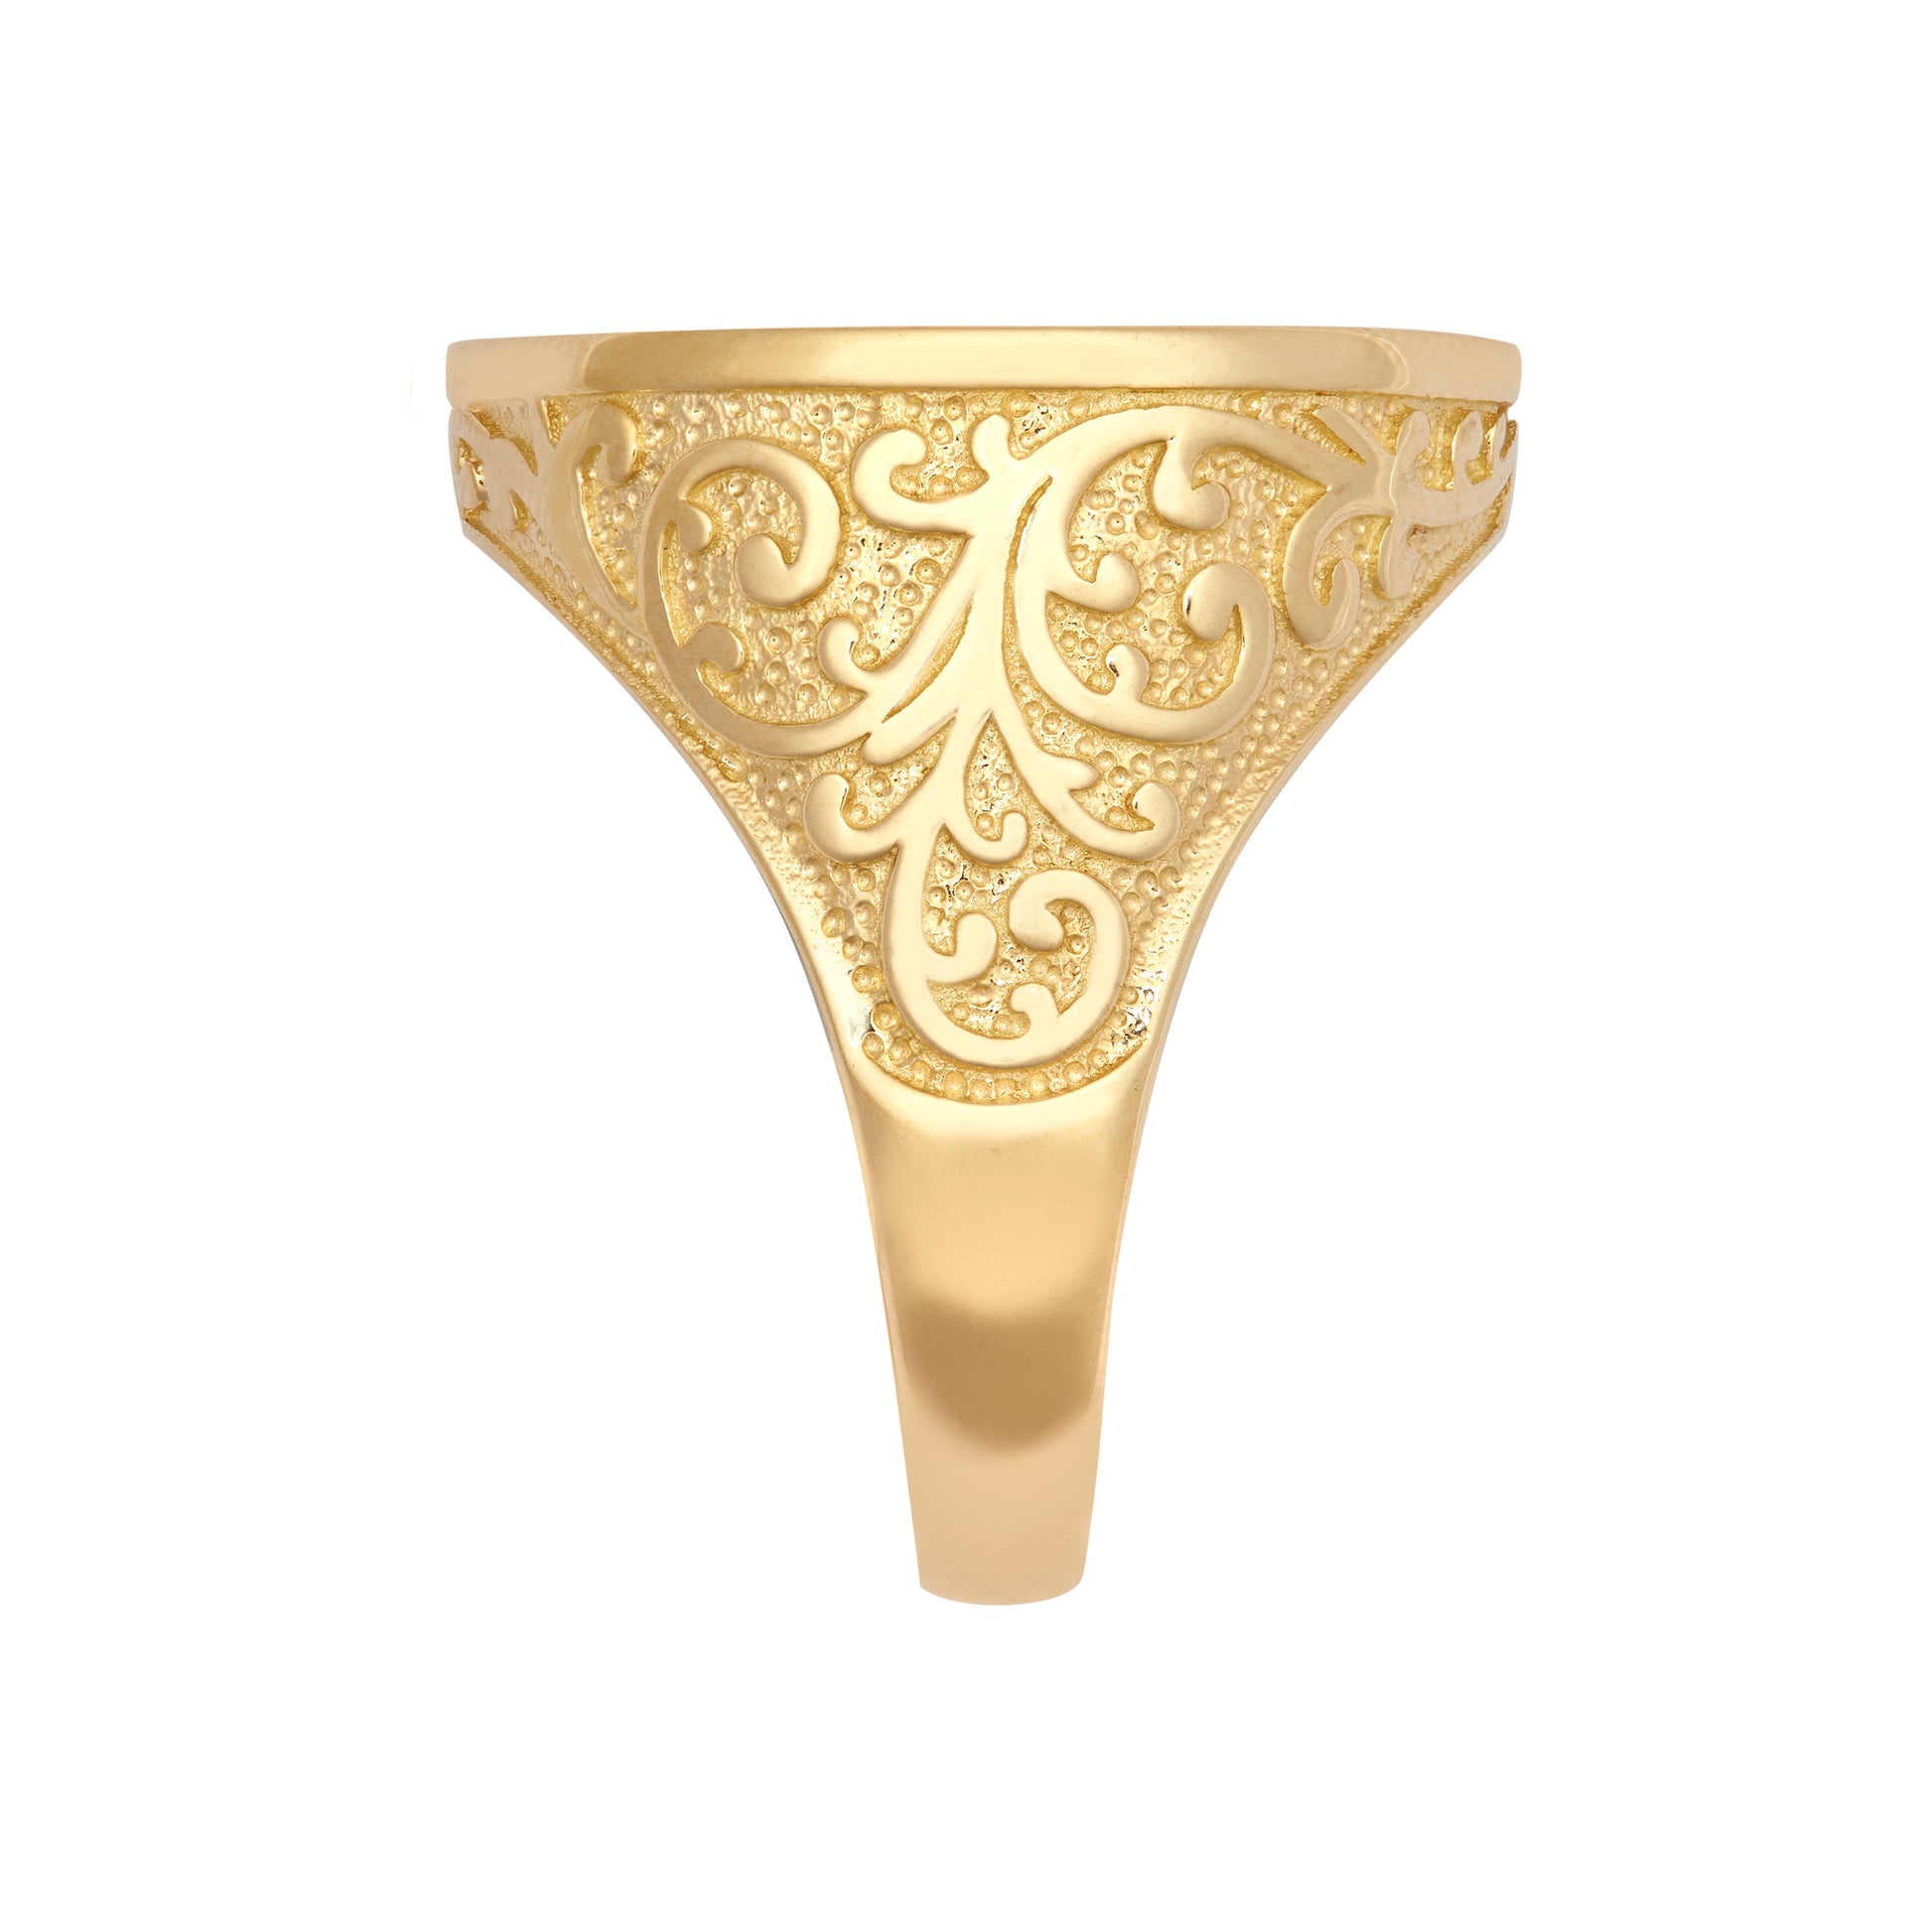 9ct Gold  Floral Engraved St George Ring (Half Sov Size) - JRN185-H